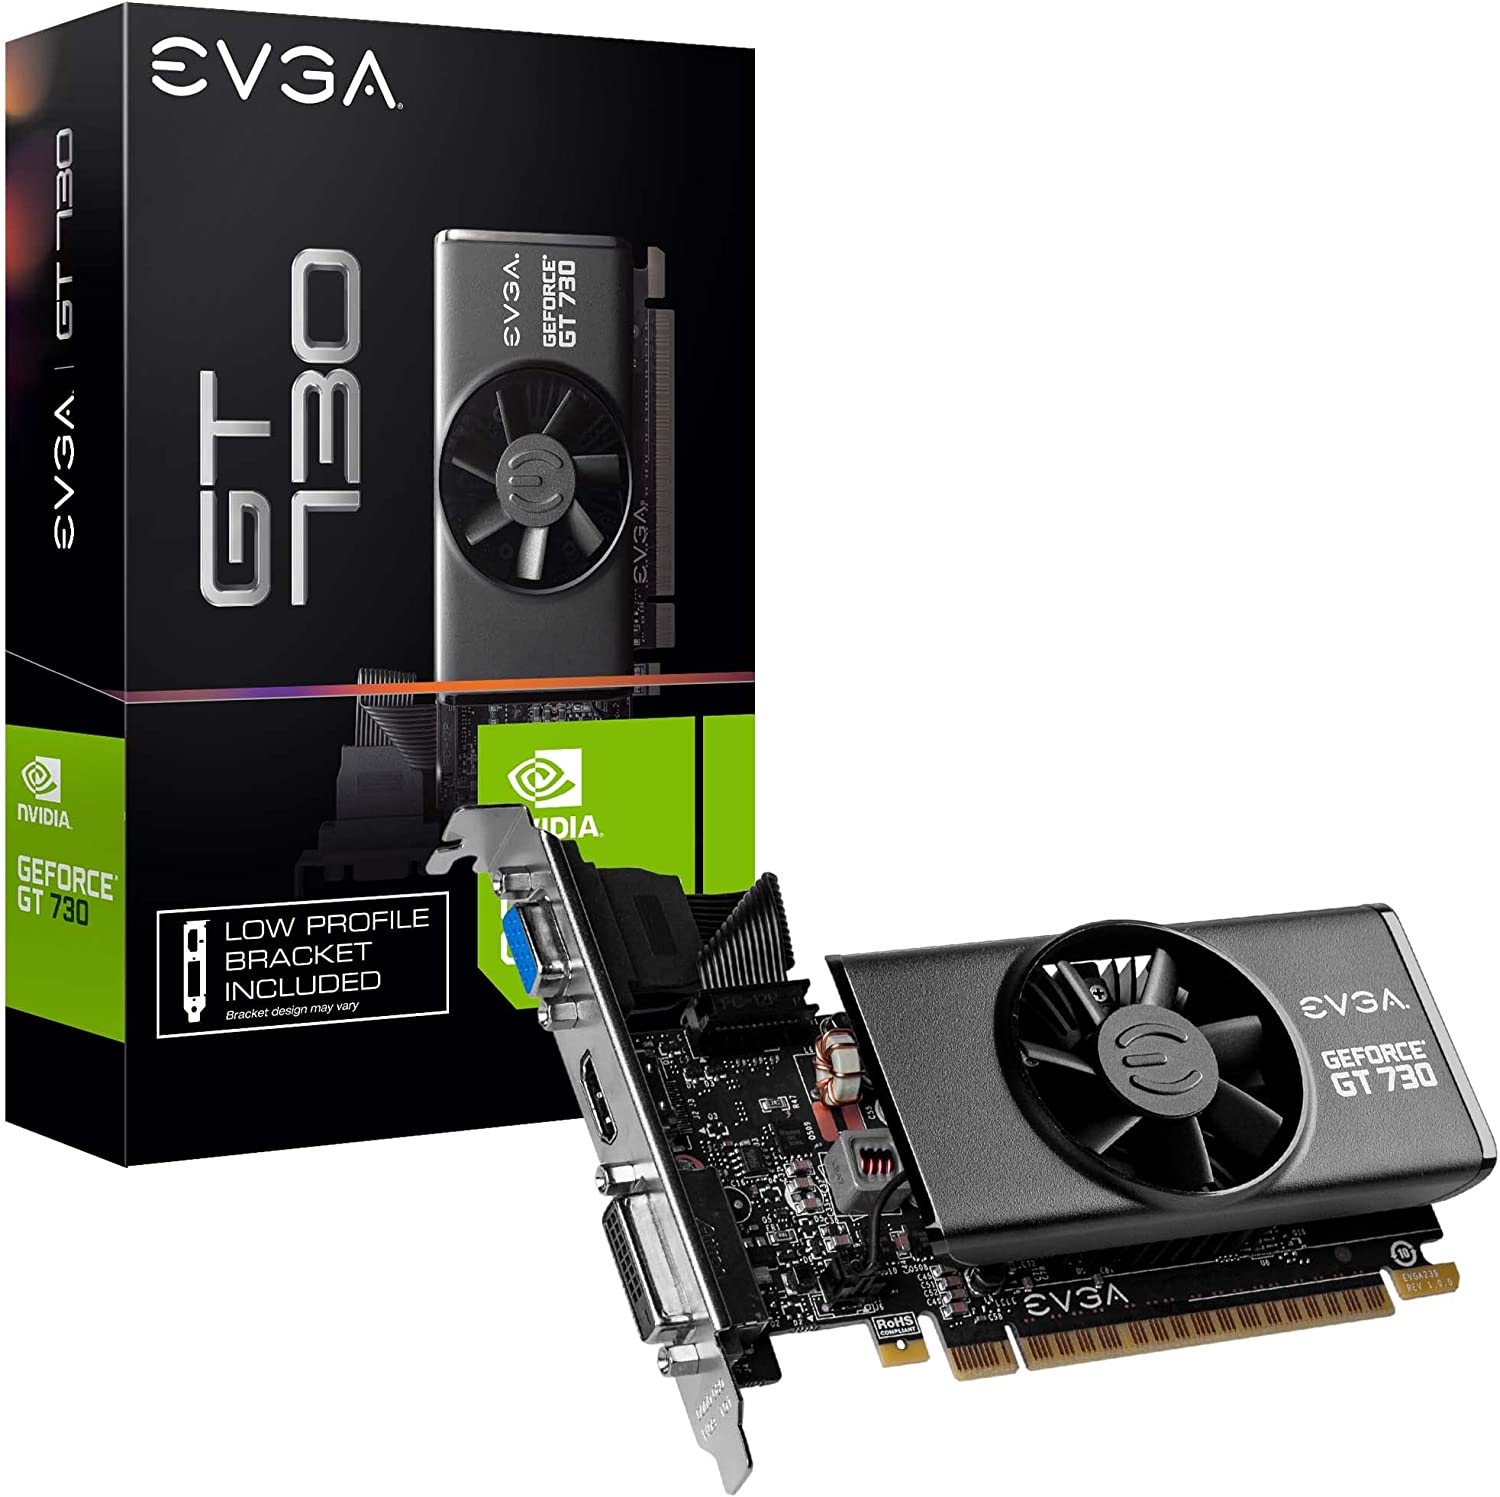 PLACA DE VIDEO GT 730 EVGA 2G DDR5 LOW PROFILE